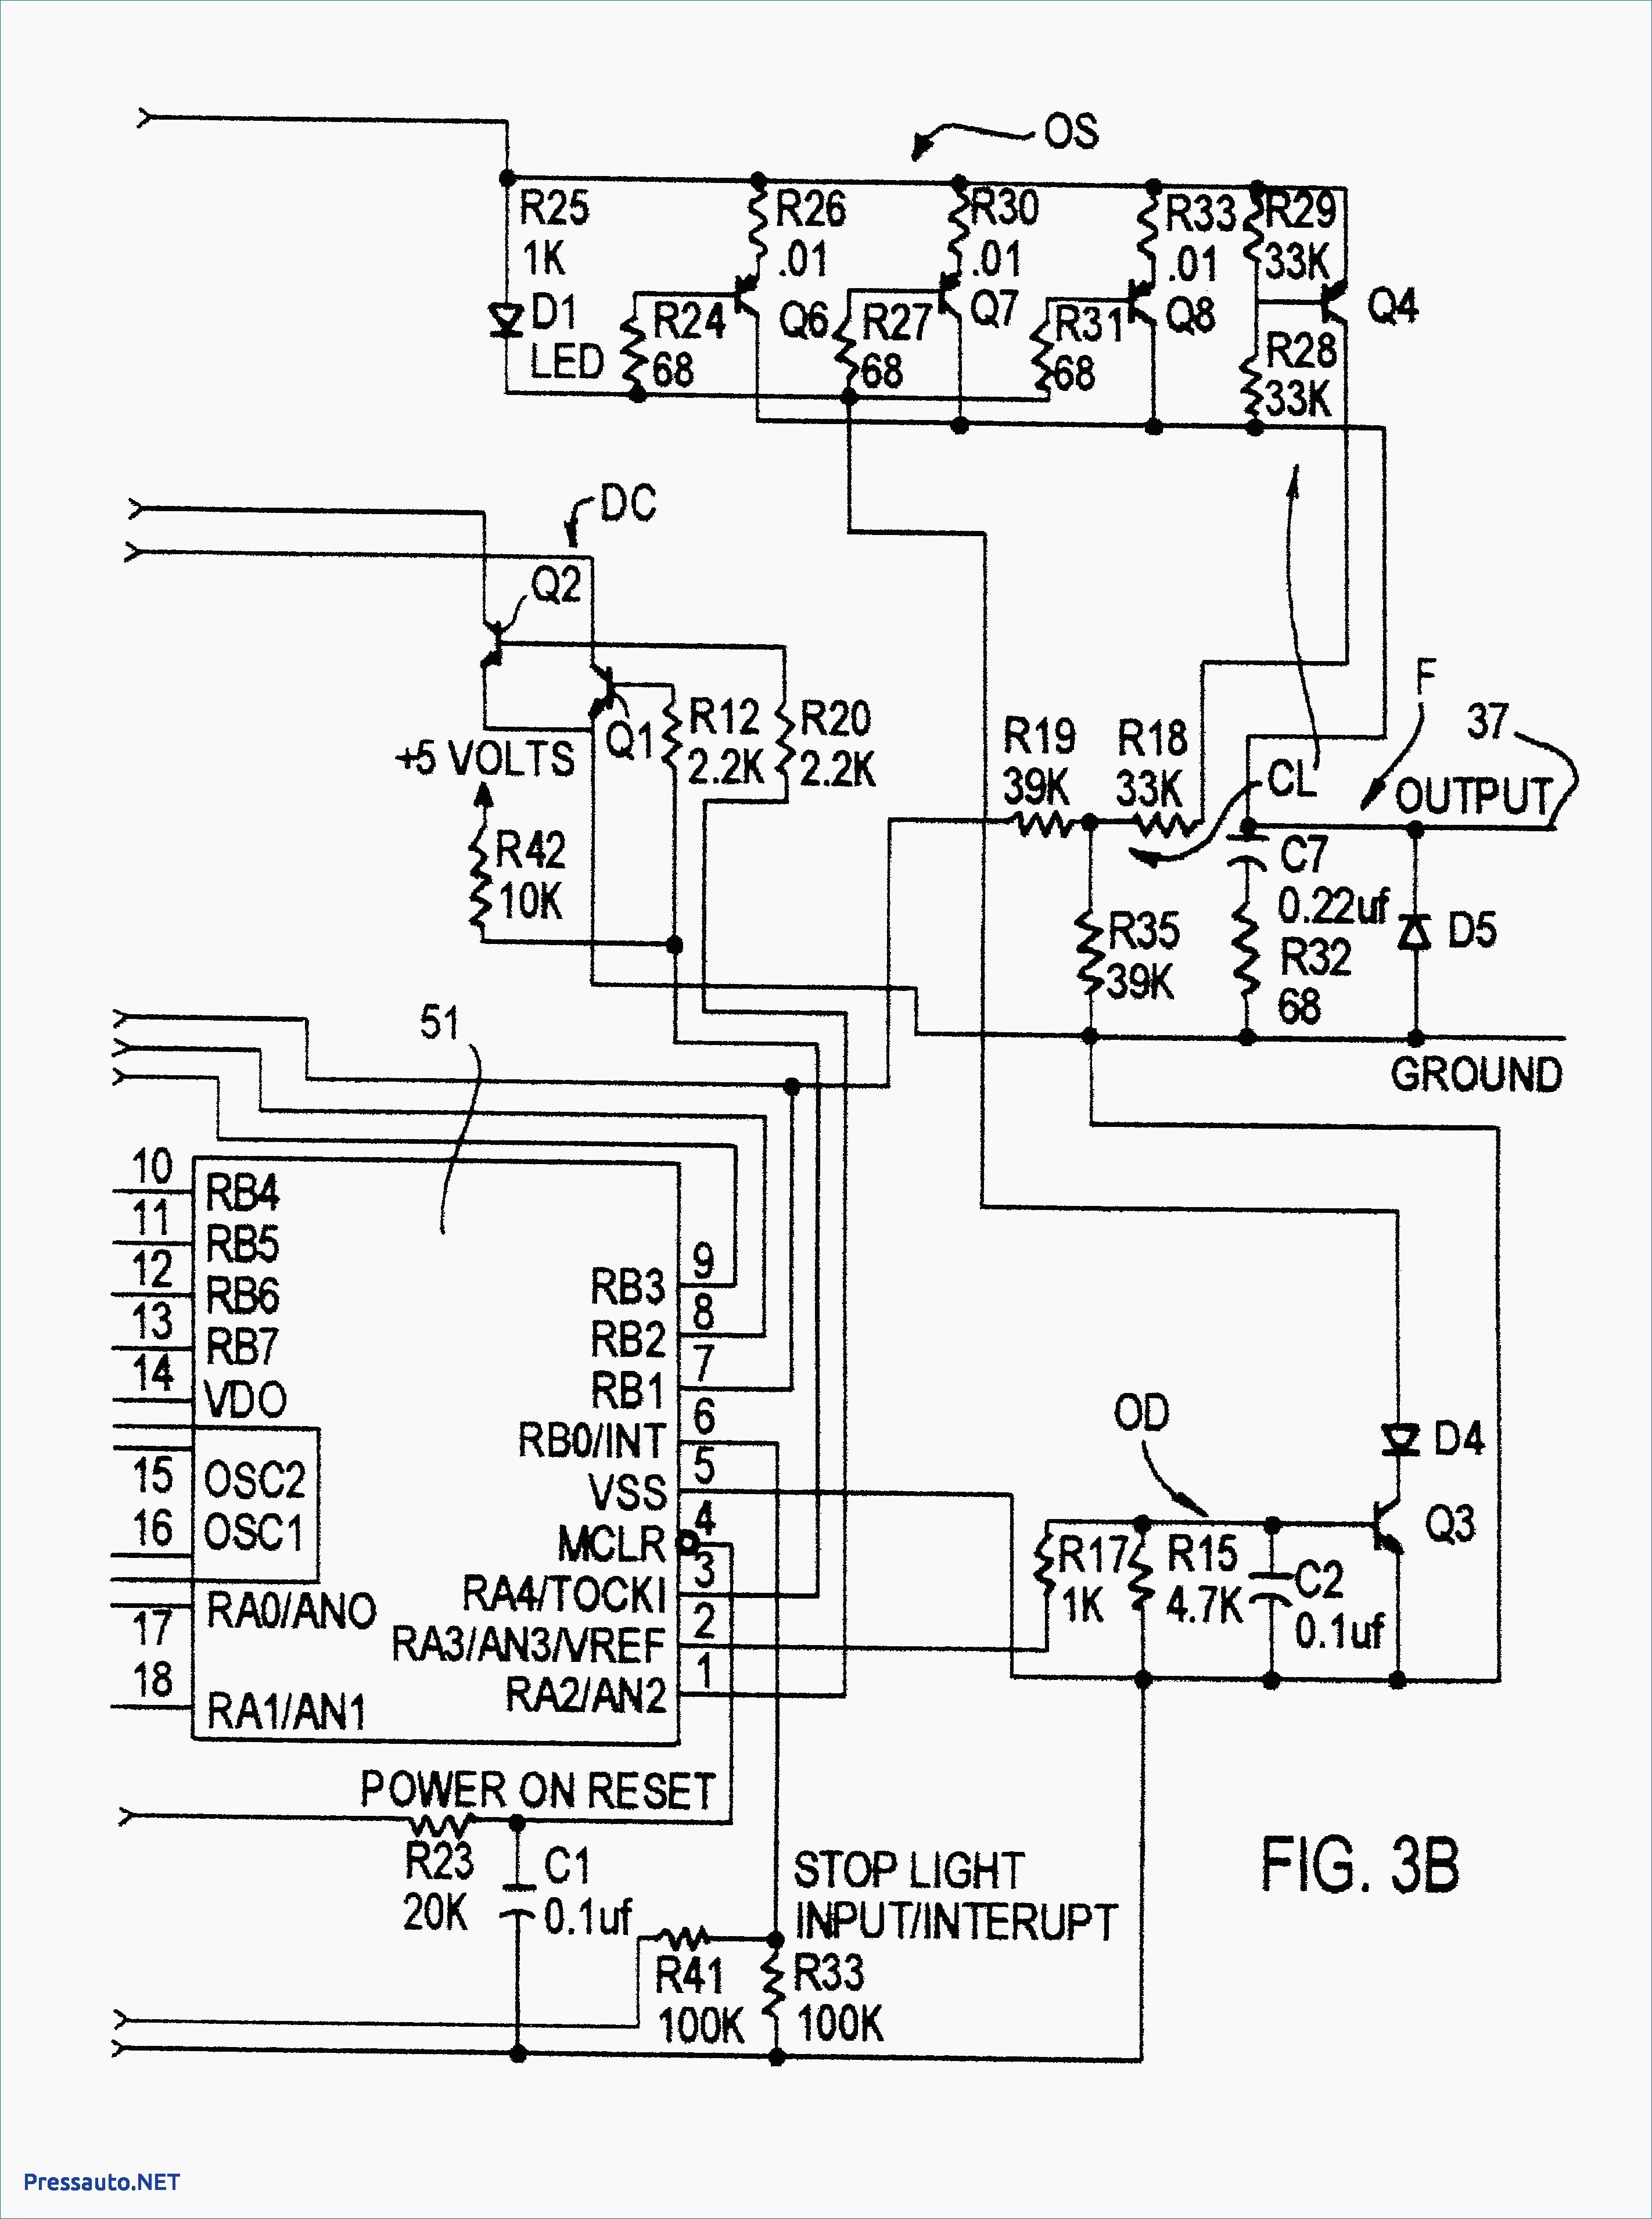 1970 Dodge Challenger Wiring Starter Switch Diagrams 1960 Dodge Van Wiring Diagram Diagrams Instructions